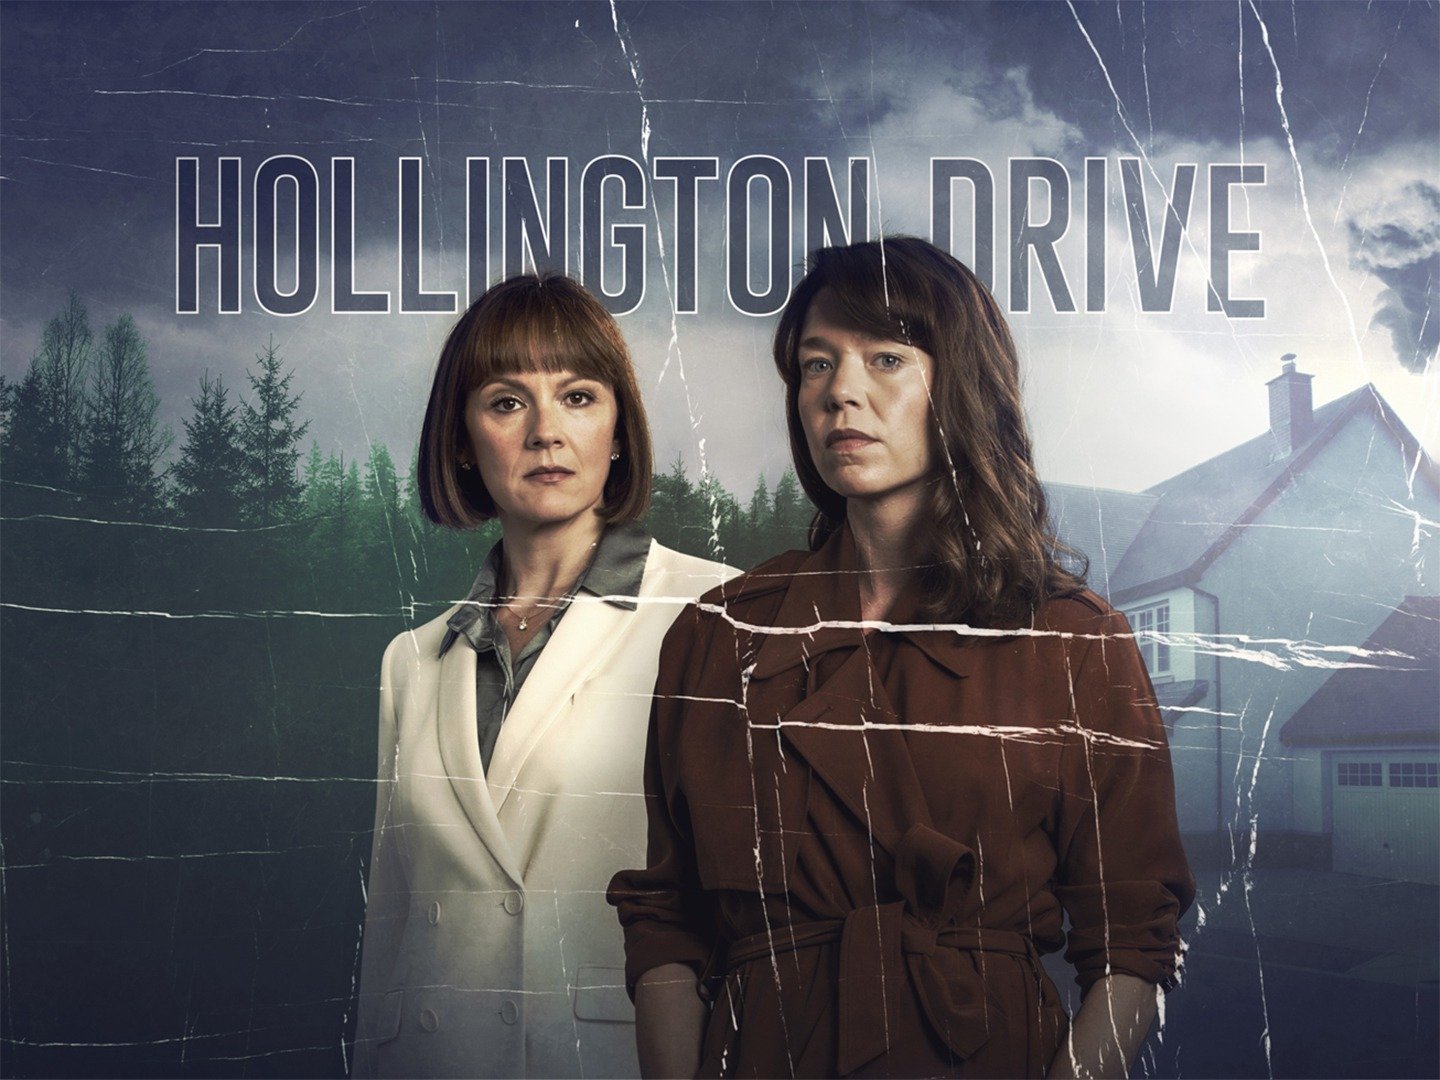 hollington drive tv series review